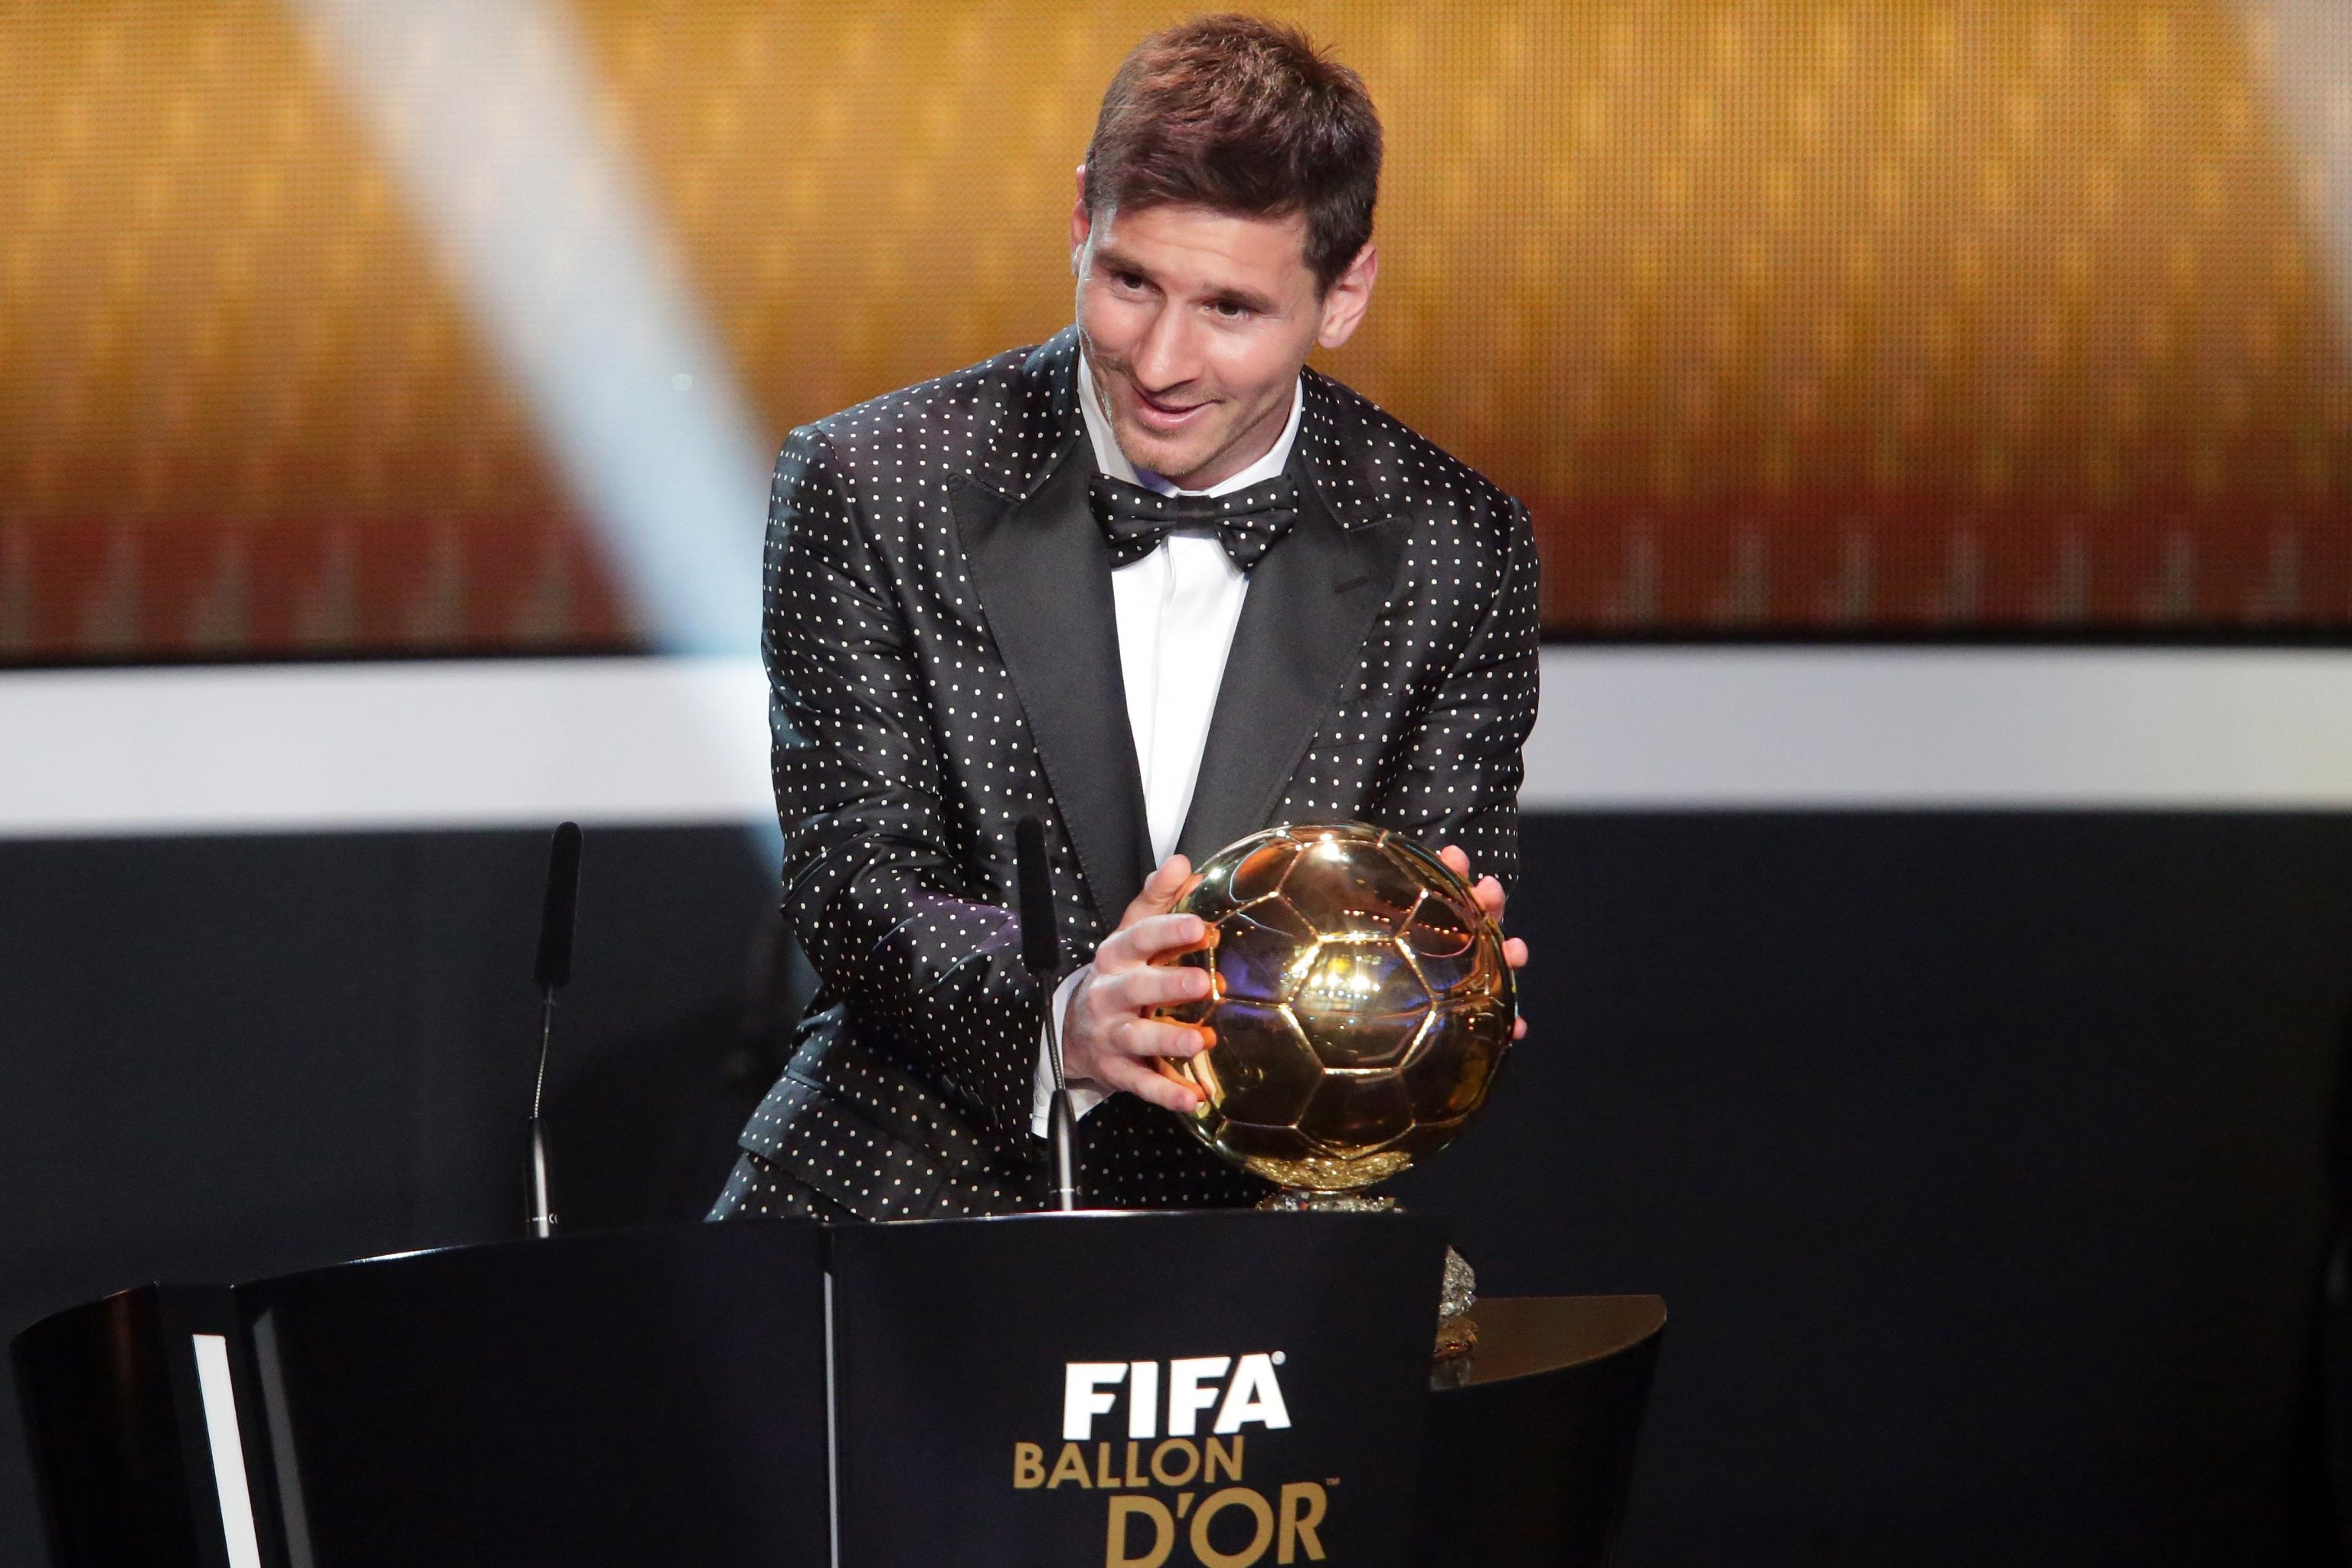 FIFA Ballon d'Or 2013 Ceremony